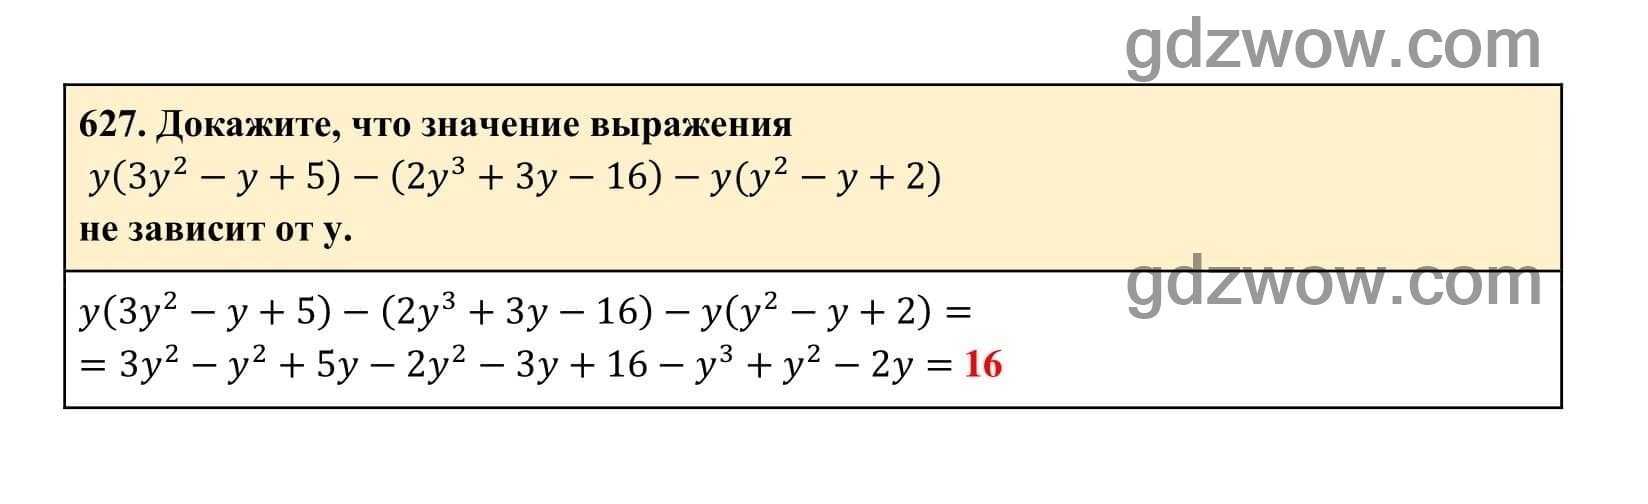 Упражнение 627 - ГДЗ по Алгебре 7 класс Учебник Макарычев (решебник) - GDZwow